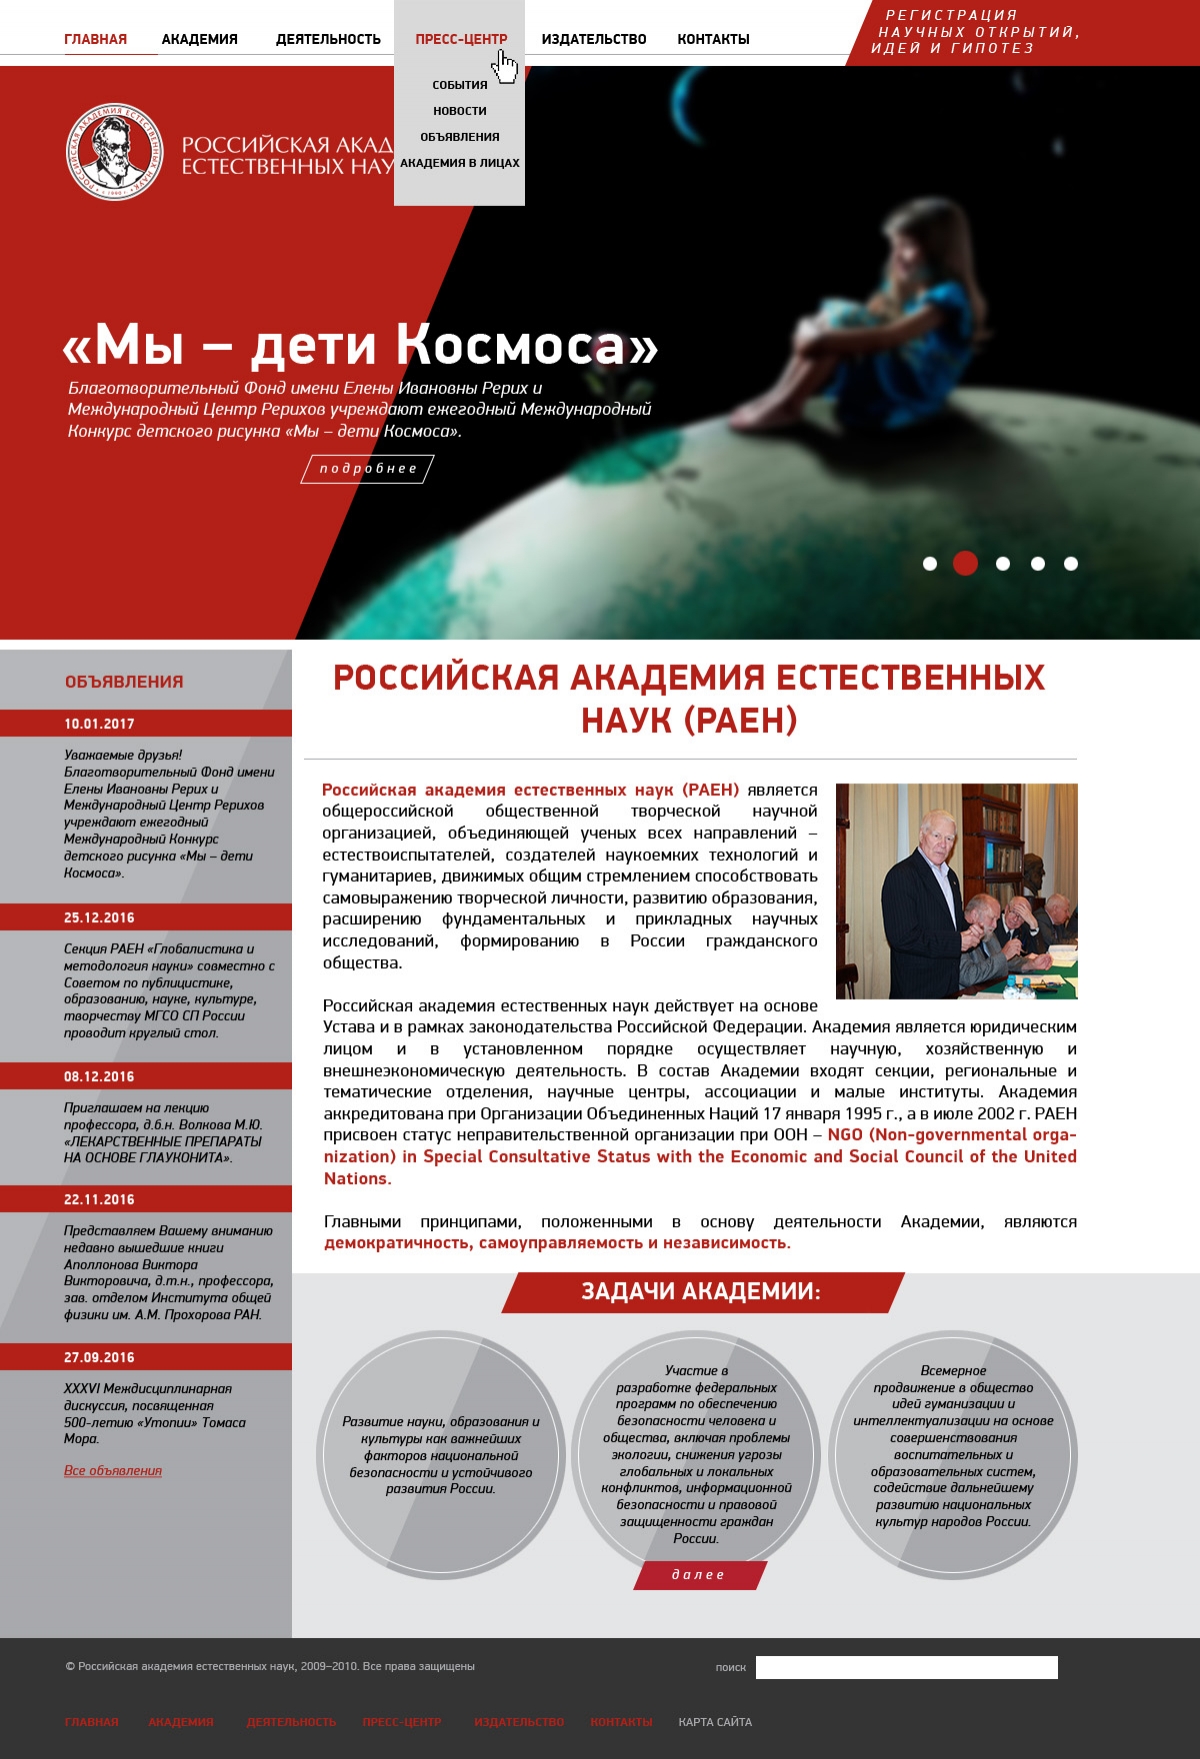 Макет главной страницы сайта Российской академии естественных наук